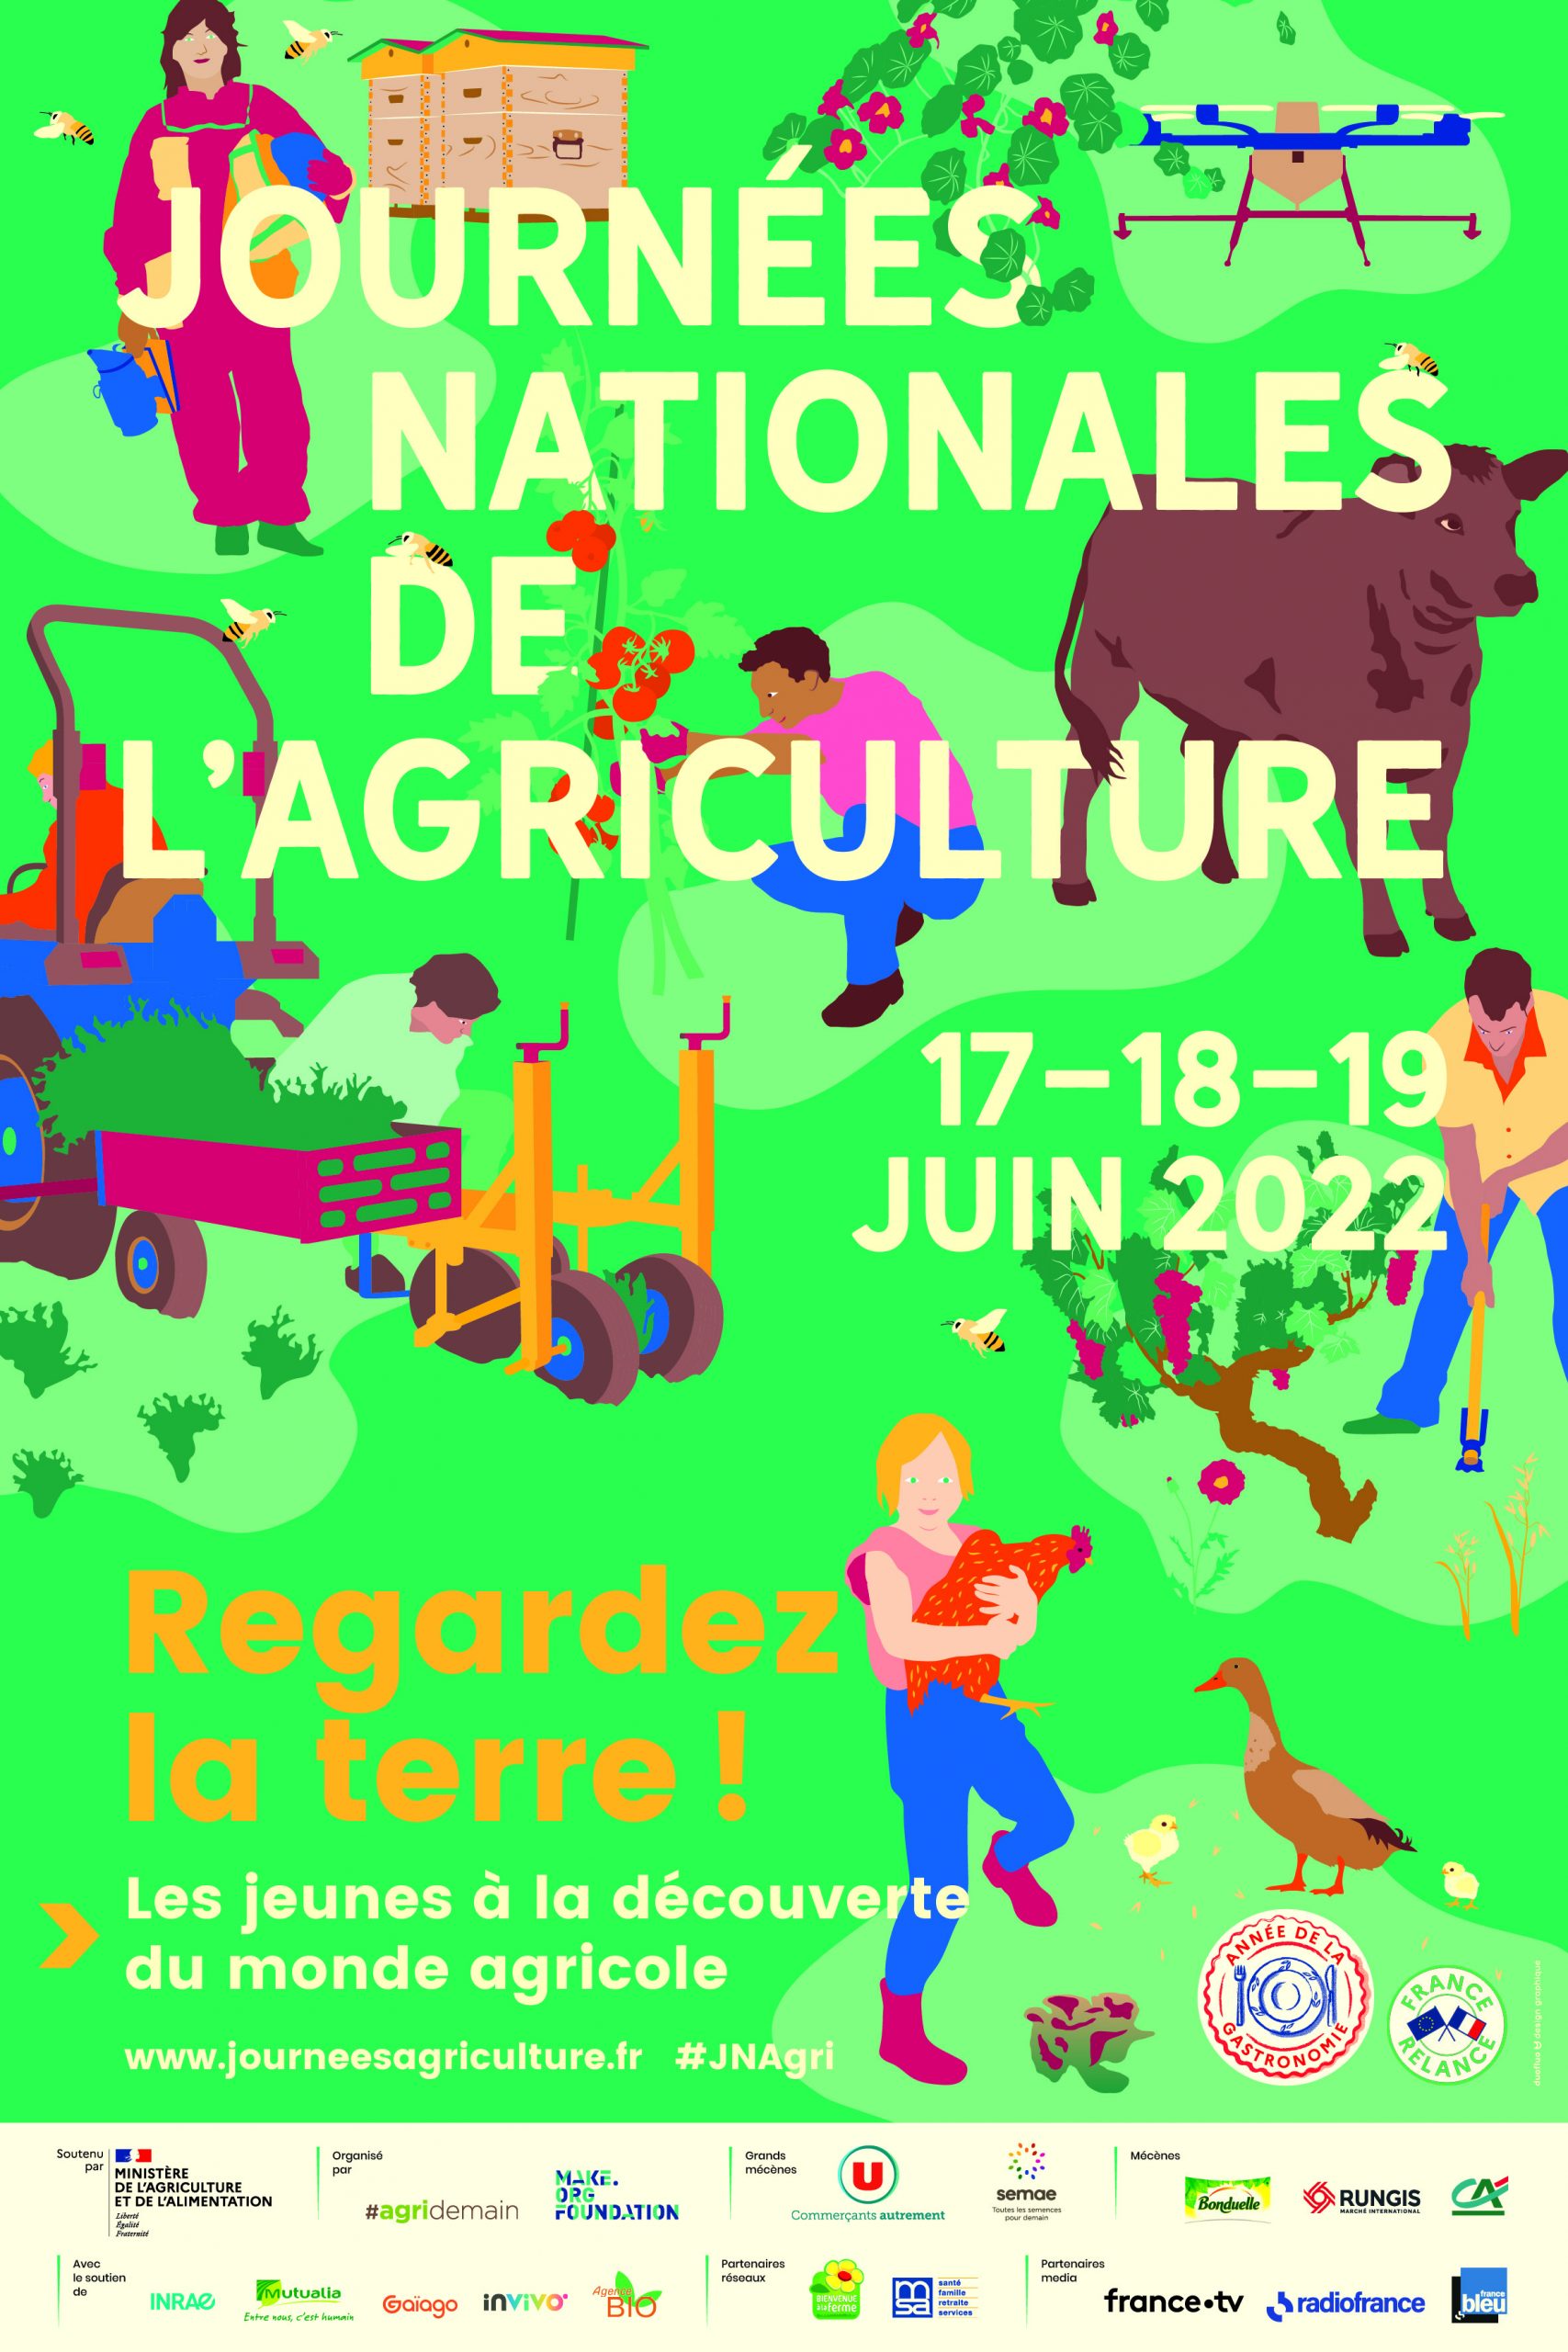 Journées Nationales de l’Agriculture : une 2e édition labellisée « Année de la Gastronomie »